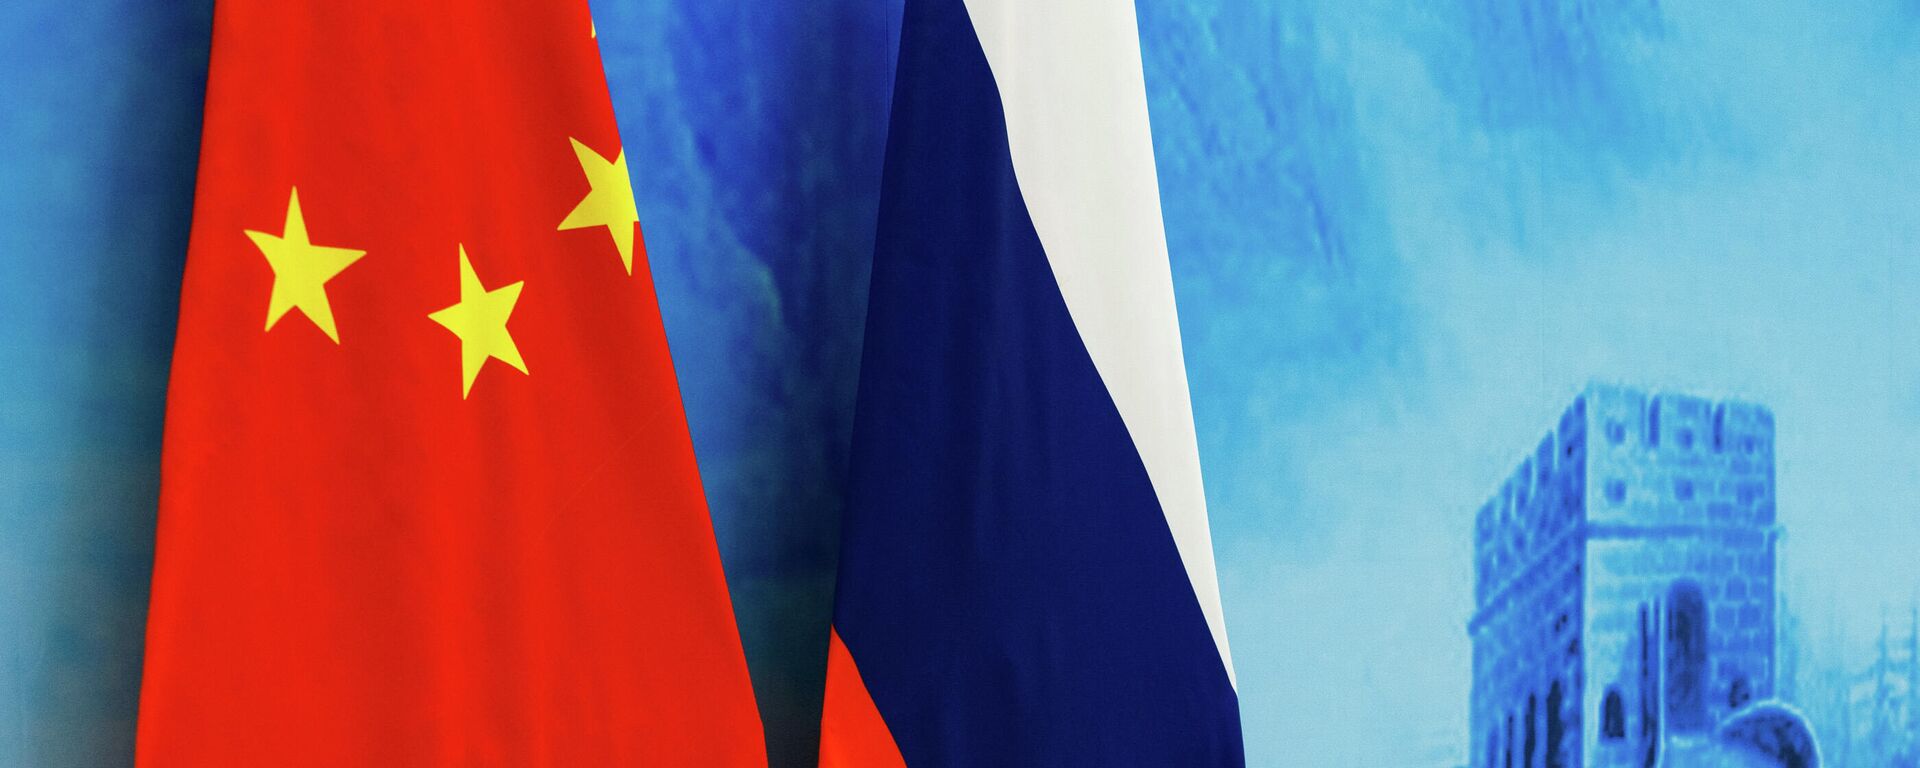 Флаги России и КНР, архивное фото - Sputnik Литва, 1920, 30.06.2021